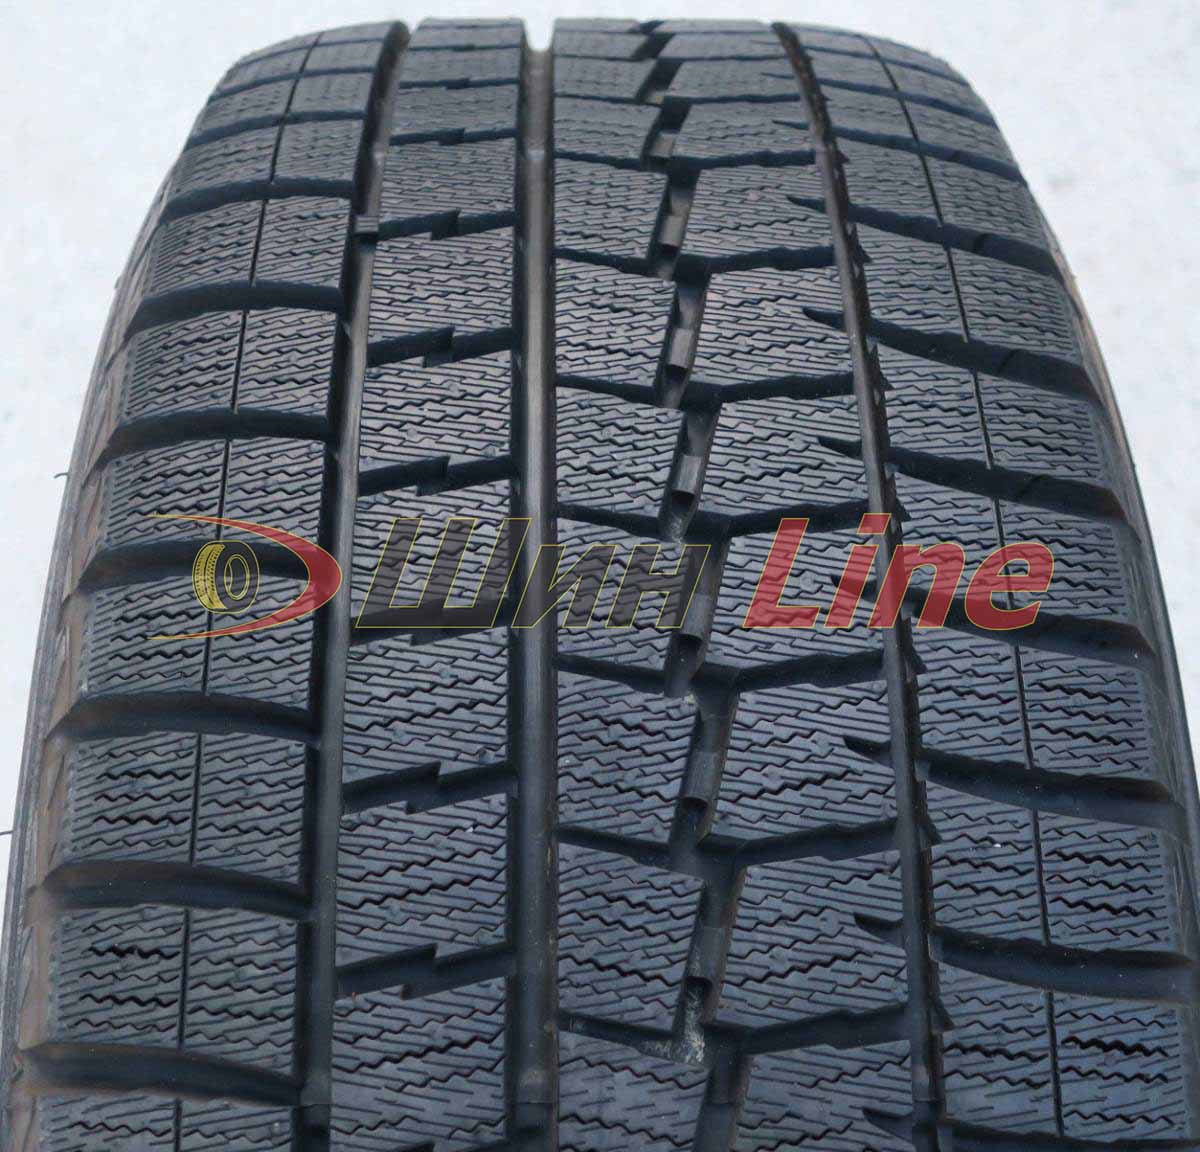 Легковая шина зимняя нешипованная Dunlop Winter Maxx WM01 225/60 R16 102T , фото 2